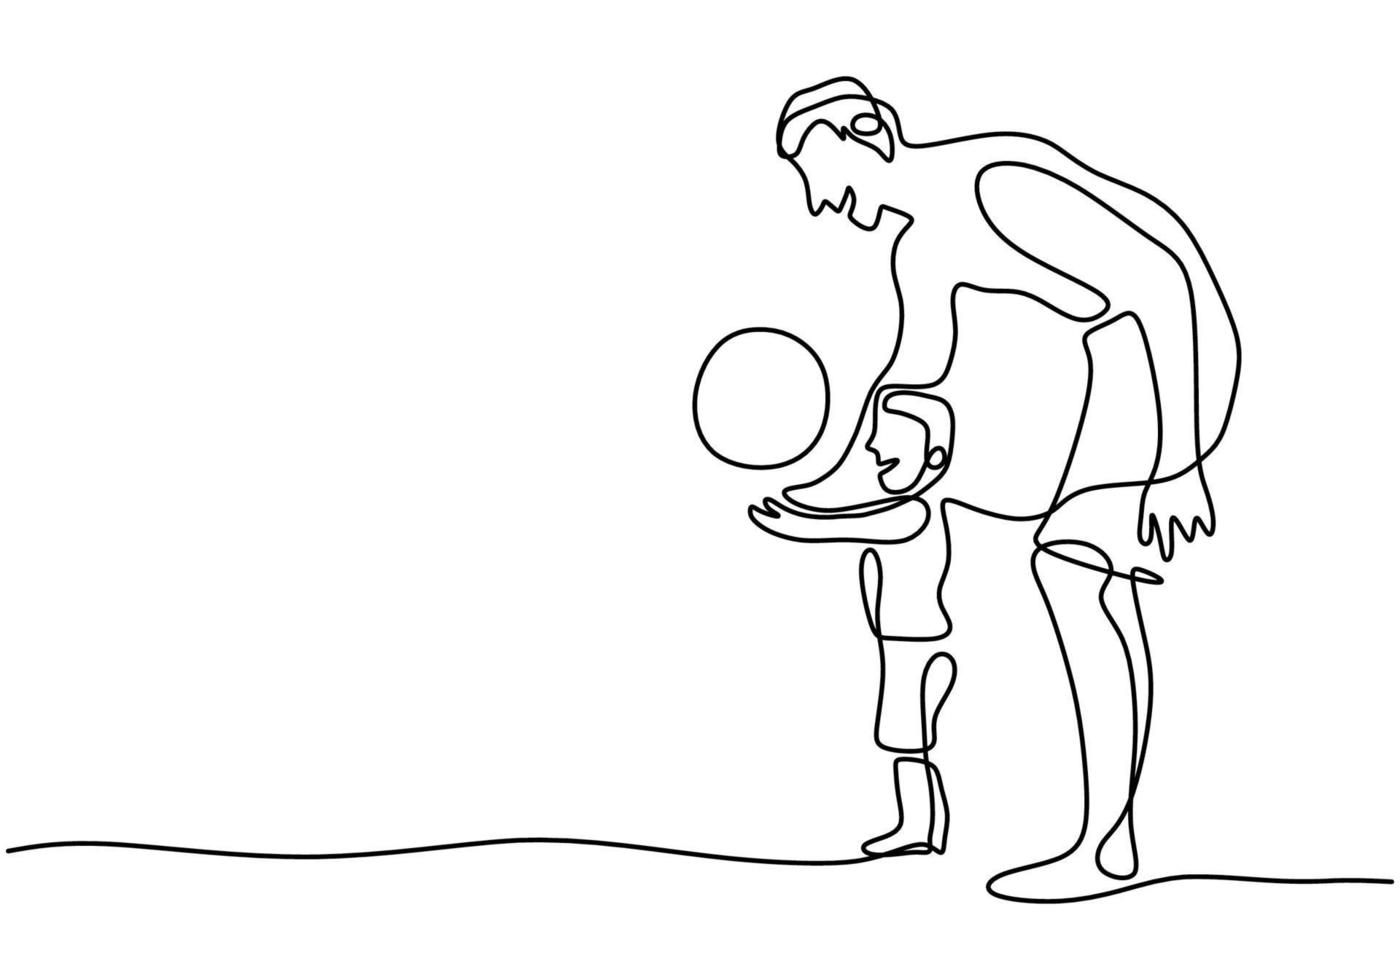 eine einzelne Strichzeichnung des jungen Vaters mit Sohn spielen Fußball am Strand. Ein Vater spielt mit seinem Sohn in den Ferien. Hand gezeichnete Kunst minimalistischen Entwurf des glücklichen Erziehungslernkonzepts vektor